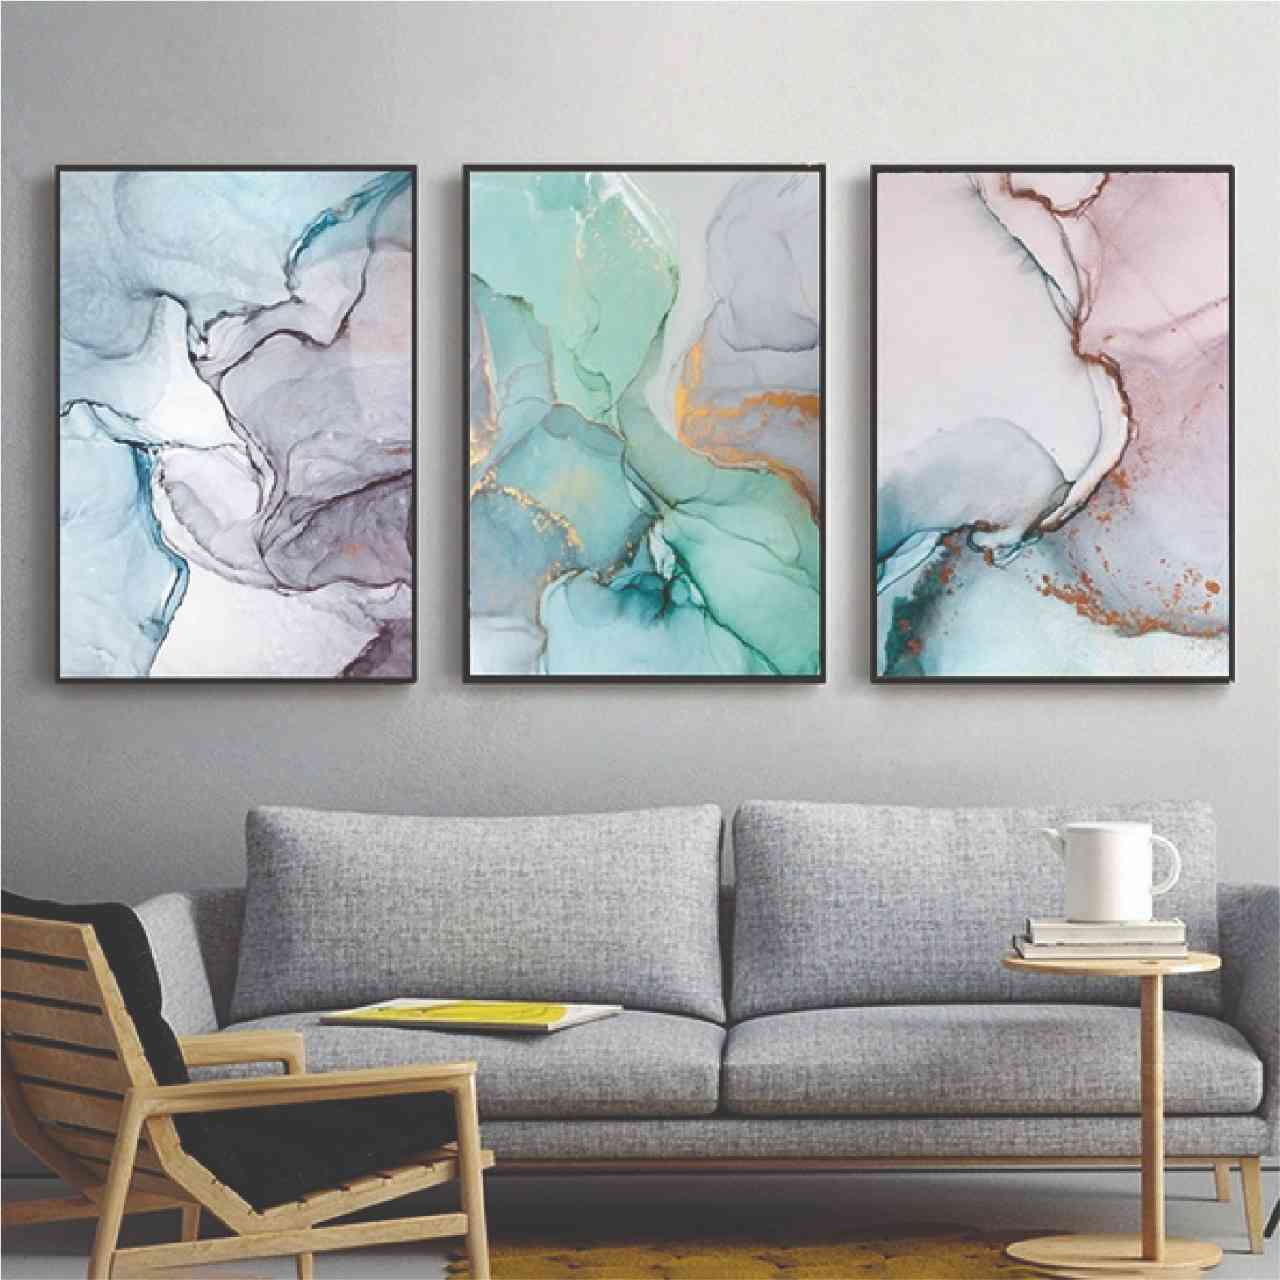 cuadros, trio de 65x90 cm, celeste, turquesa y gris 10.